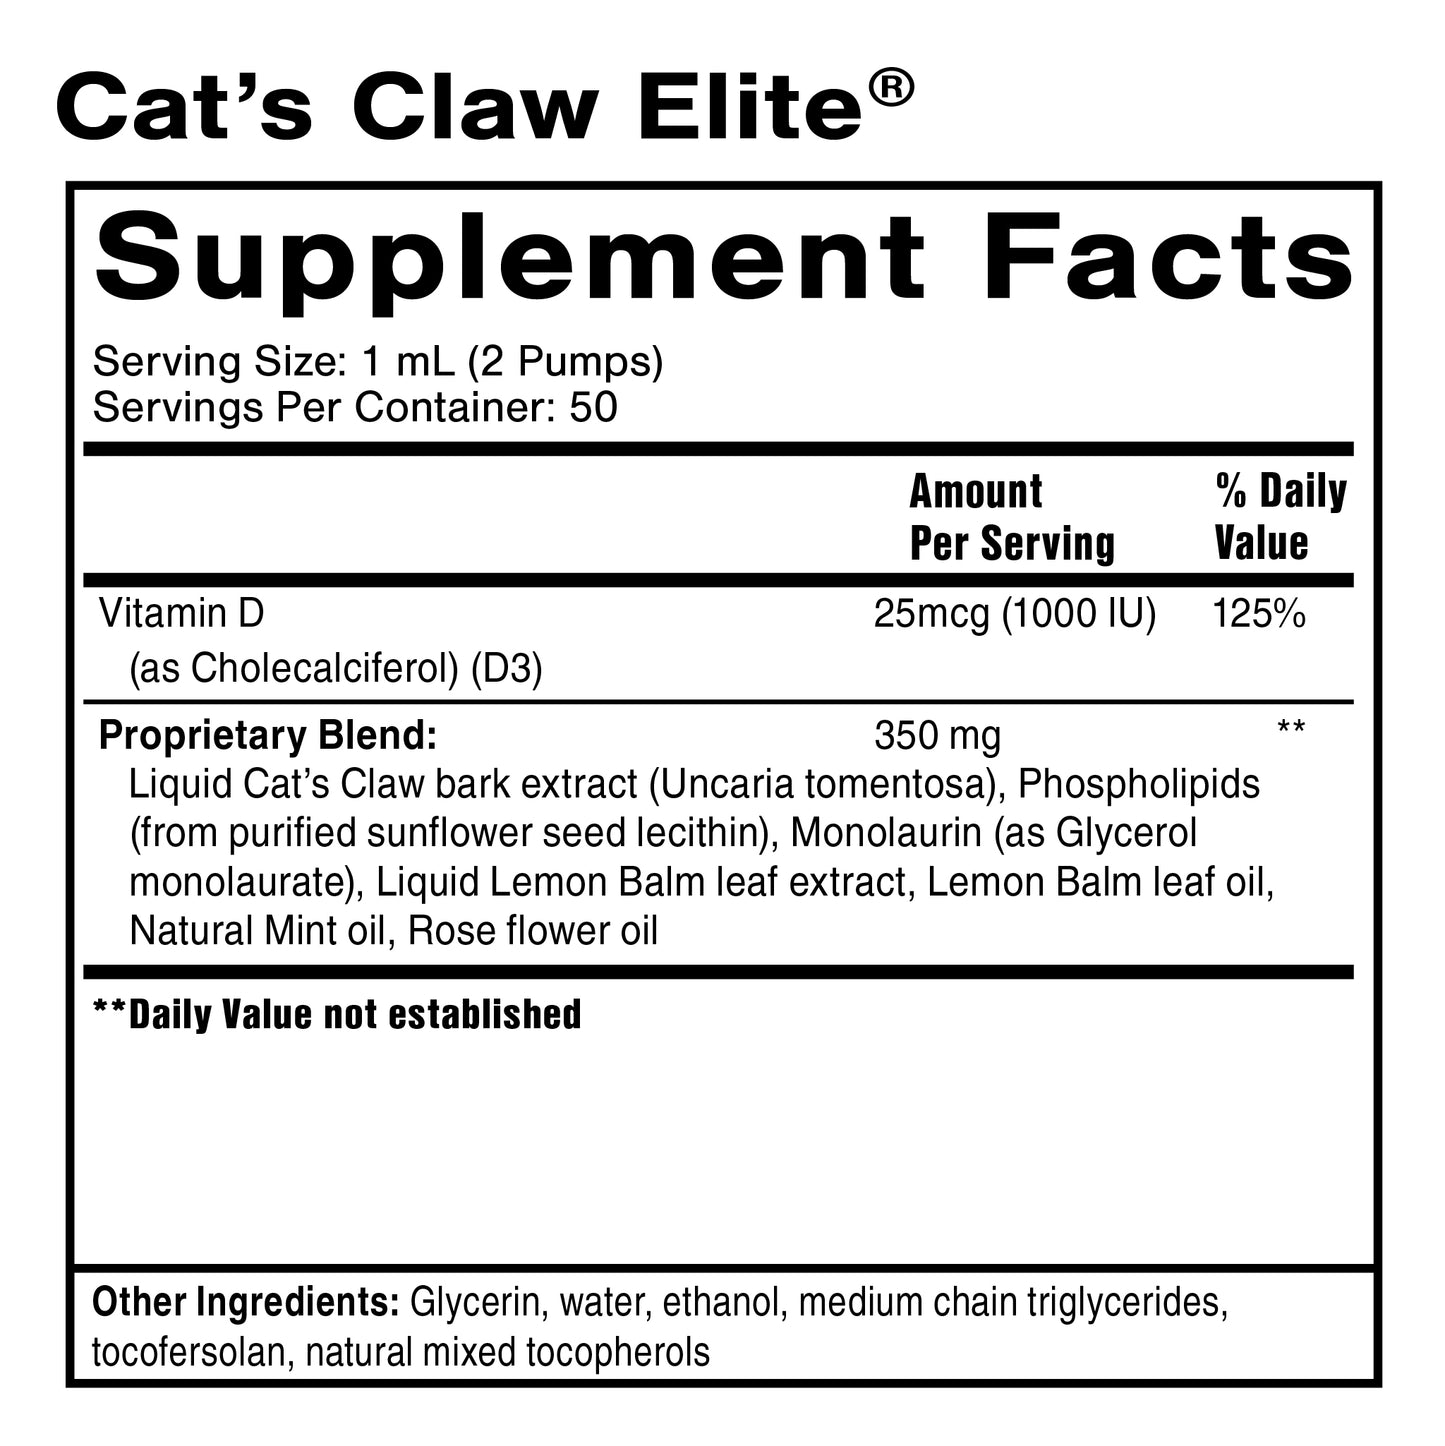 Cat’s Claw Elite®